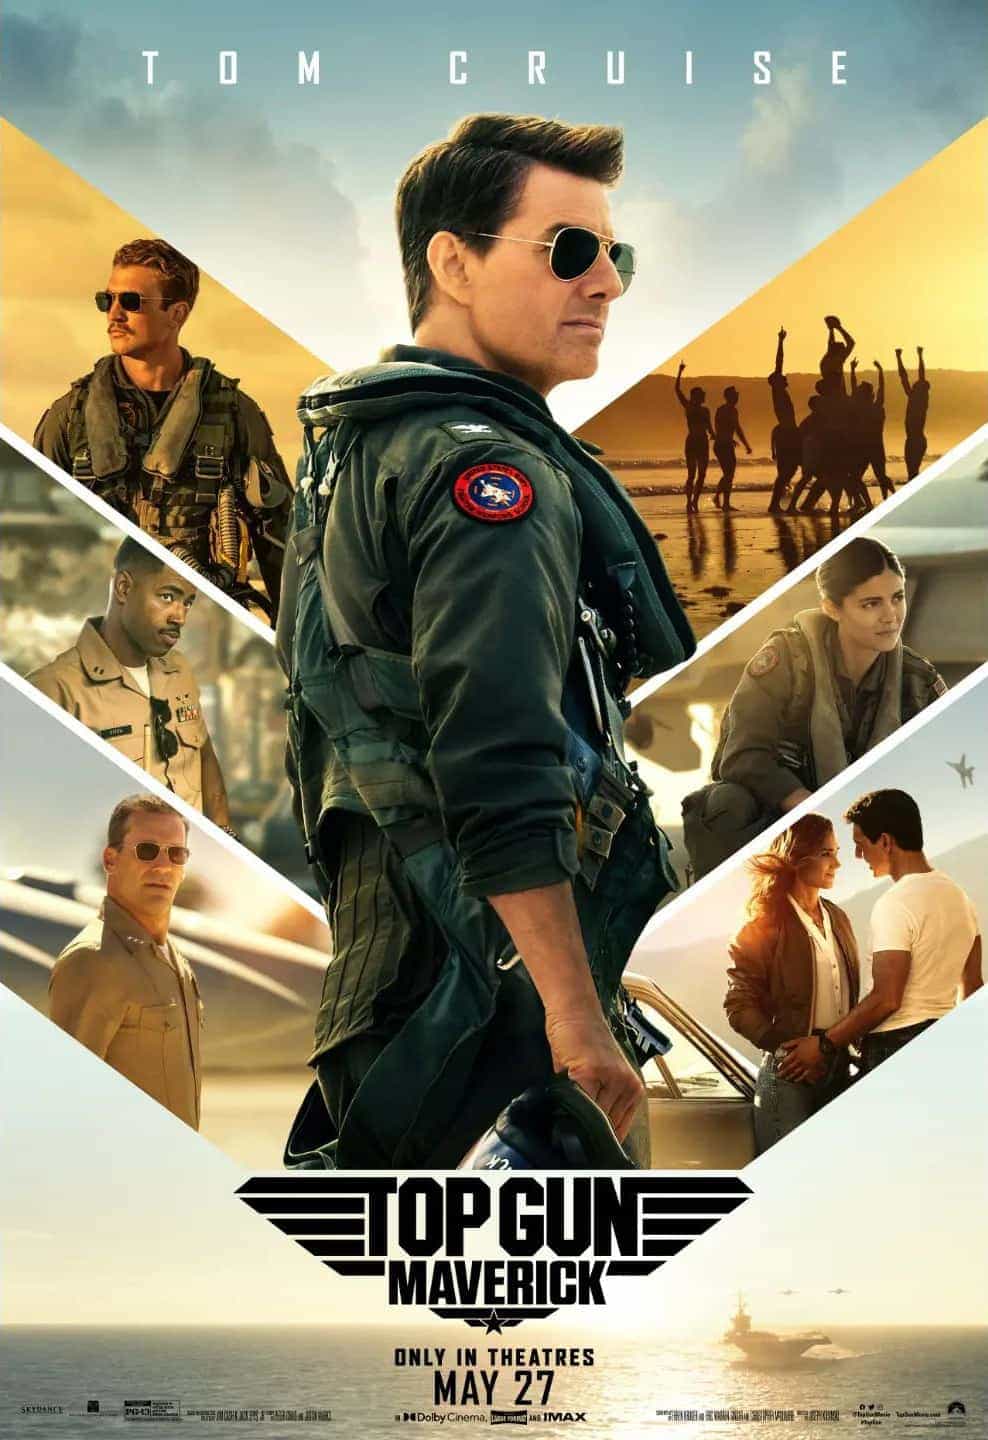 This weeks UK new movie preview 27th May 2022 - Top Gun: Maverick and The Bob